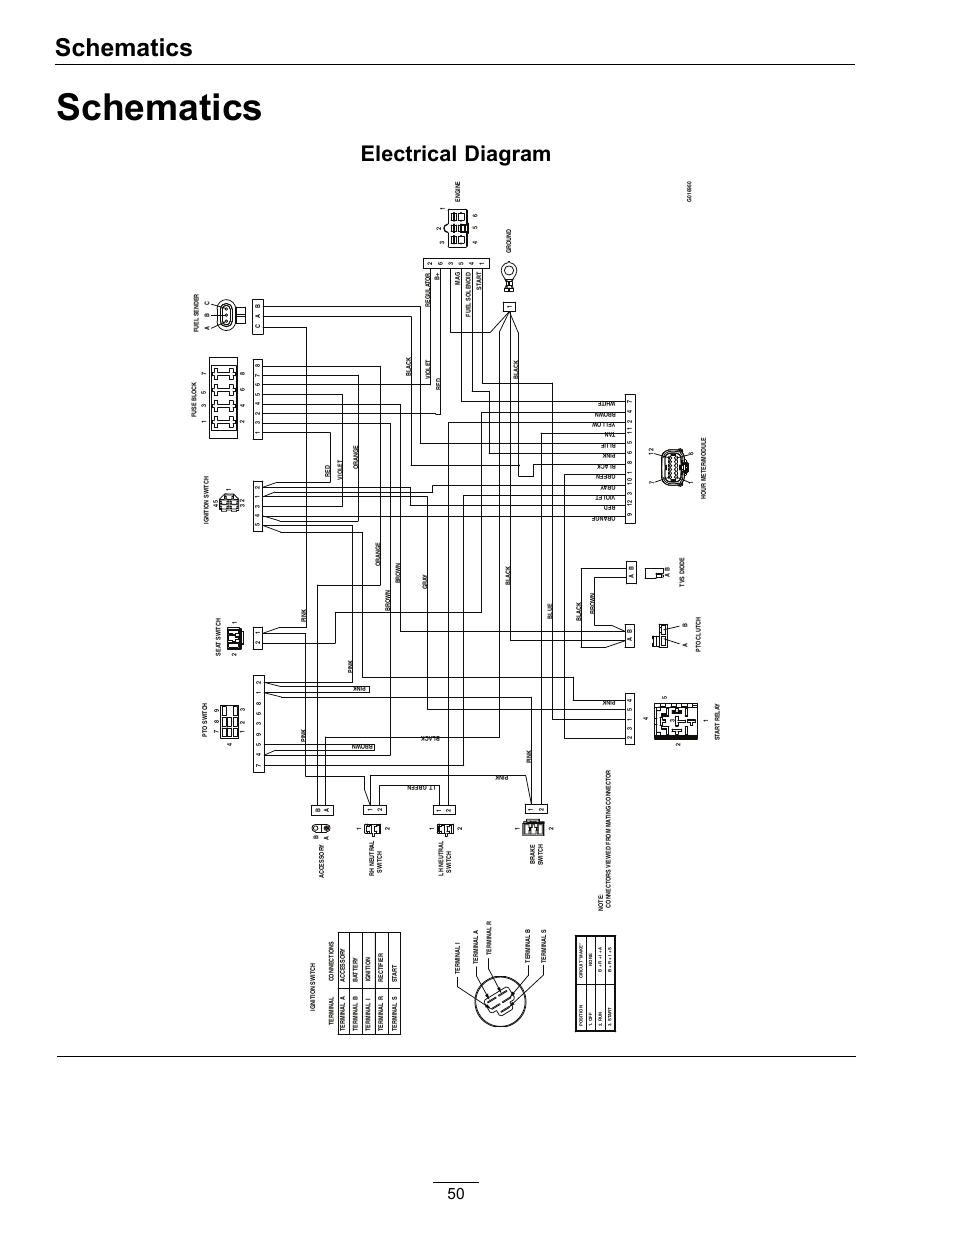 115v 3 speed squirrel cage blower wiring diagram